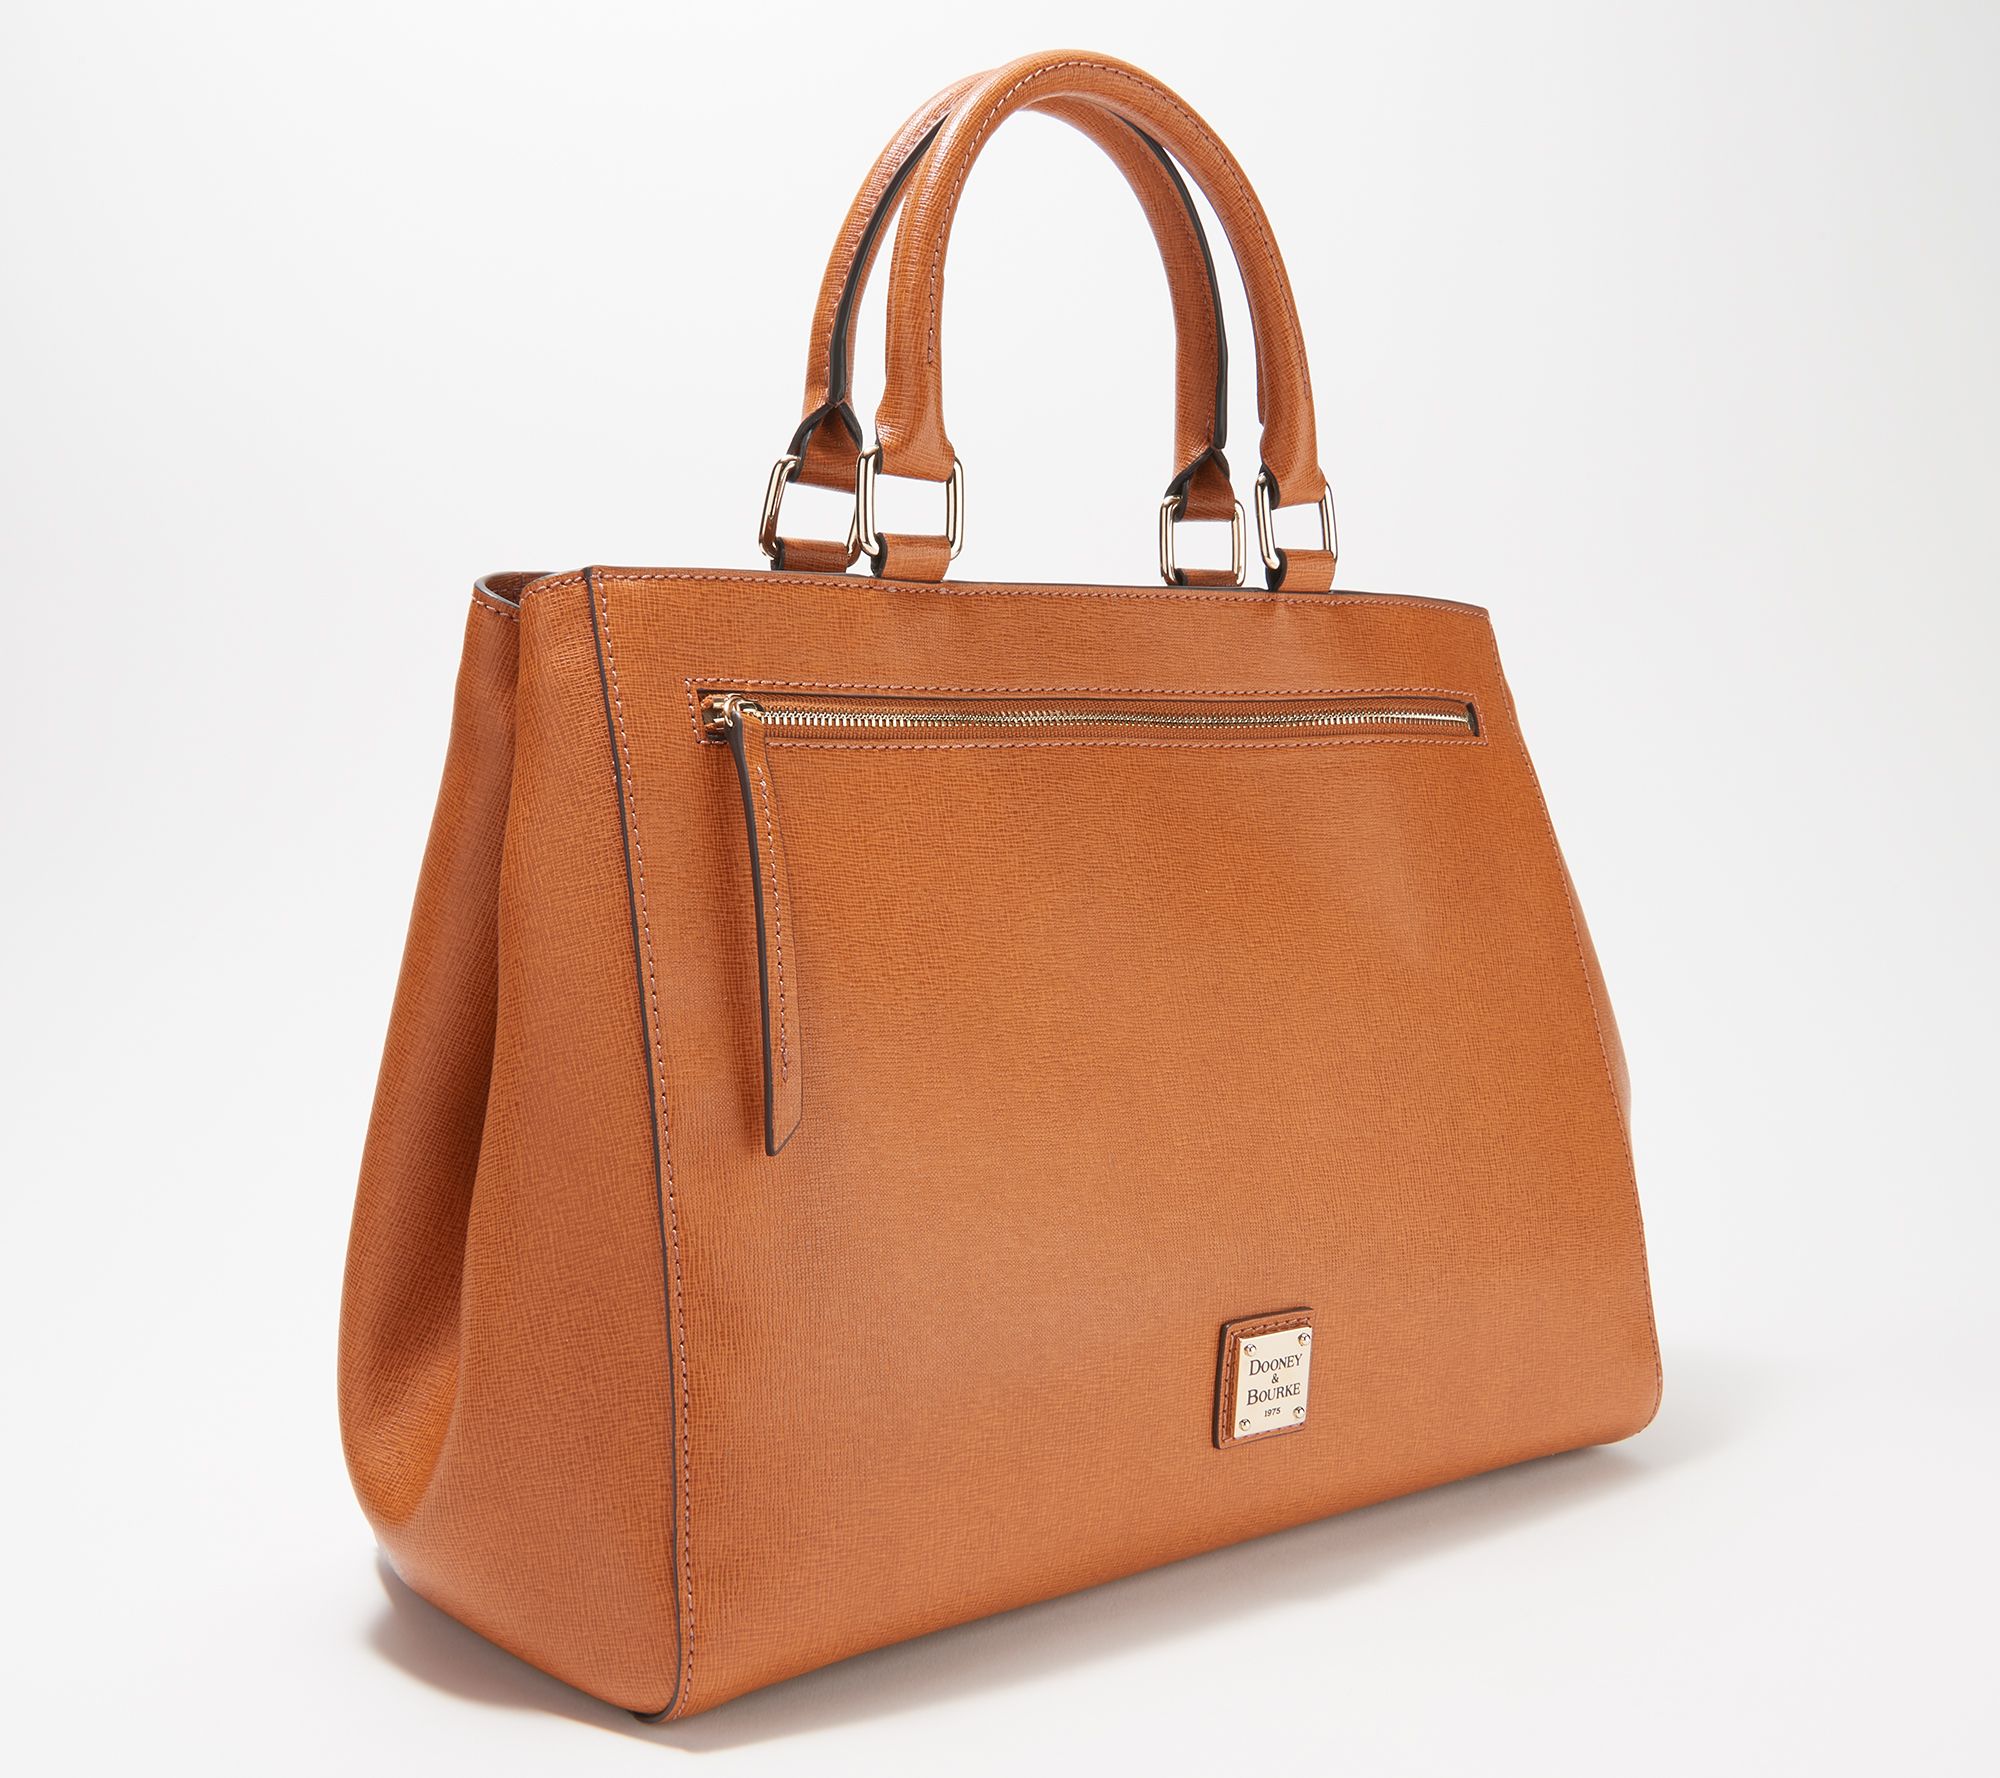  Dooney & Bourke Handbag, Saffiano Shopper Tote - Amber